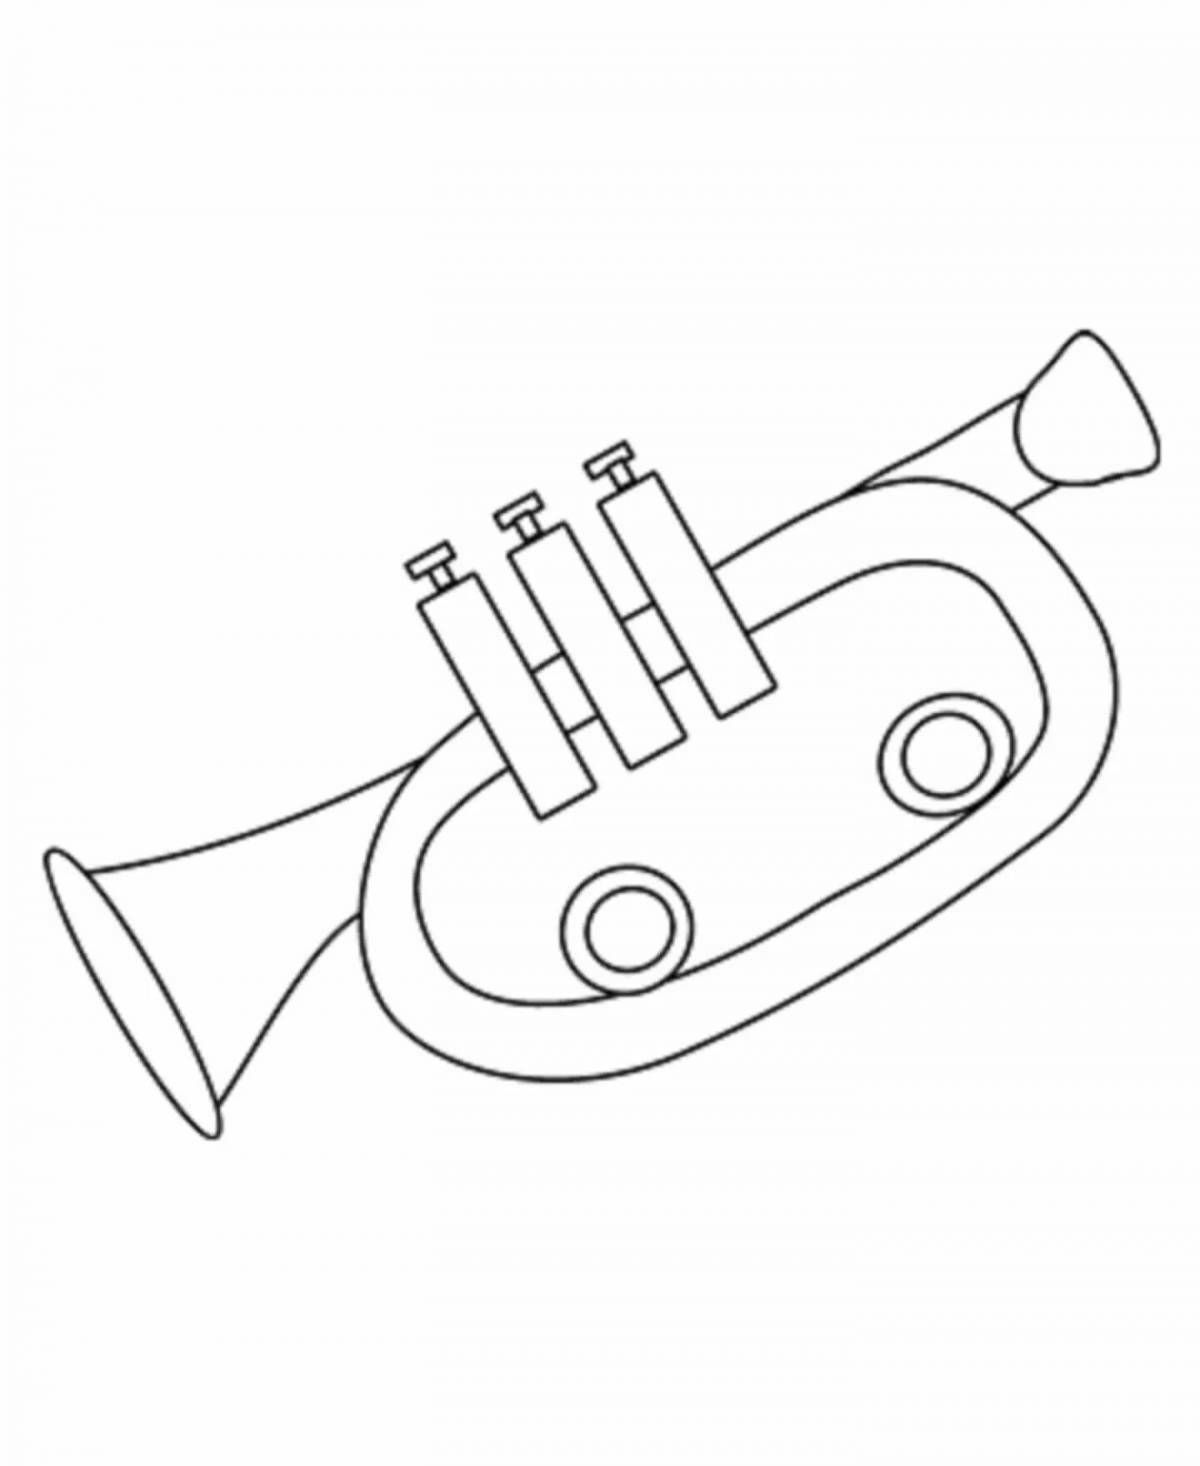 100 000 изображений по запросу Ноты труба доступны в рамках роялти-фри лицензии